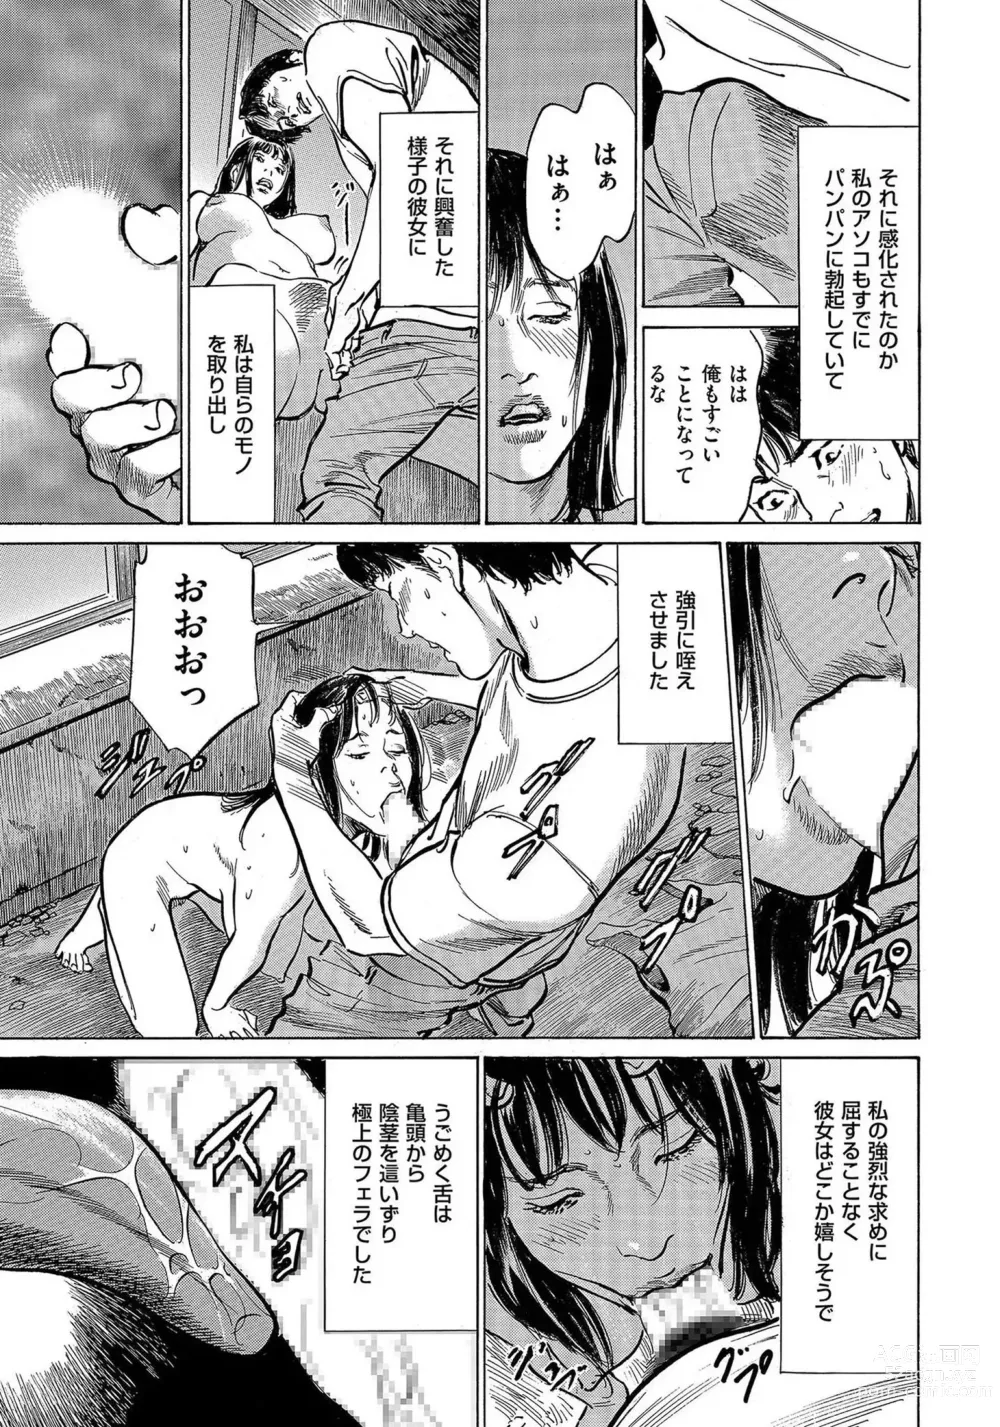 Page 30 of manga Saikou ni Toroketa Honki de Honto no Hanashi 16 episodes